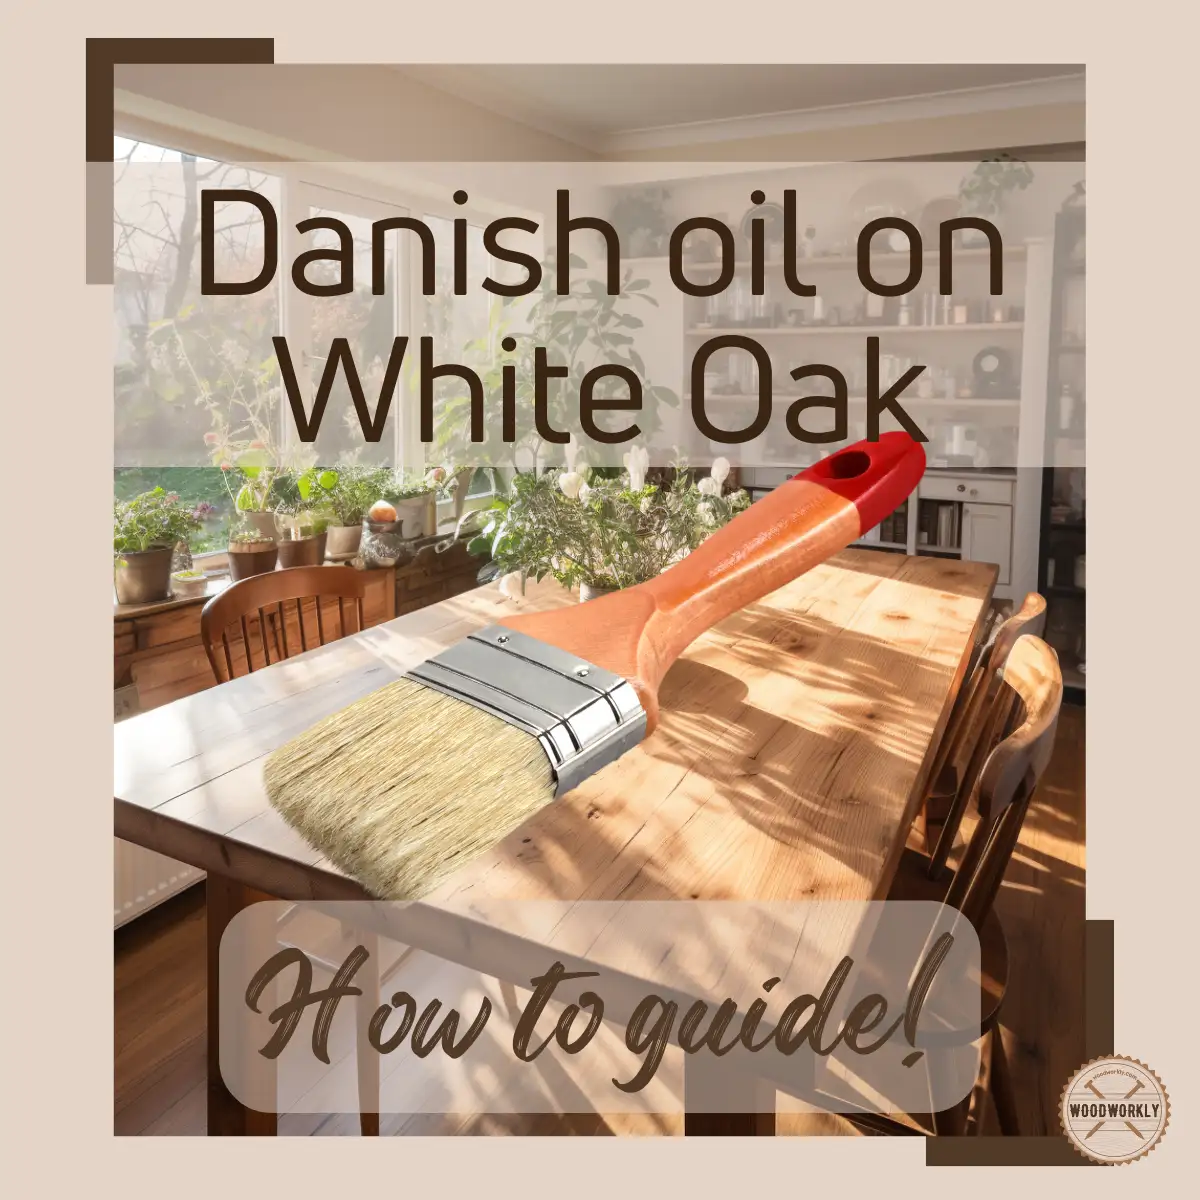 Danish oil on White Oak